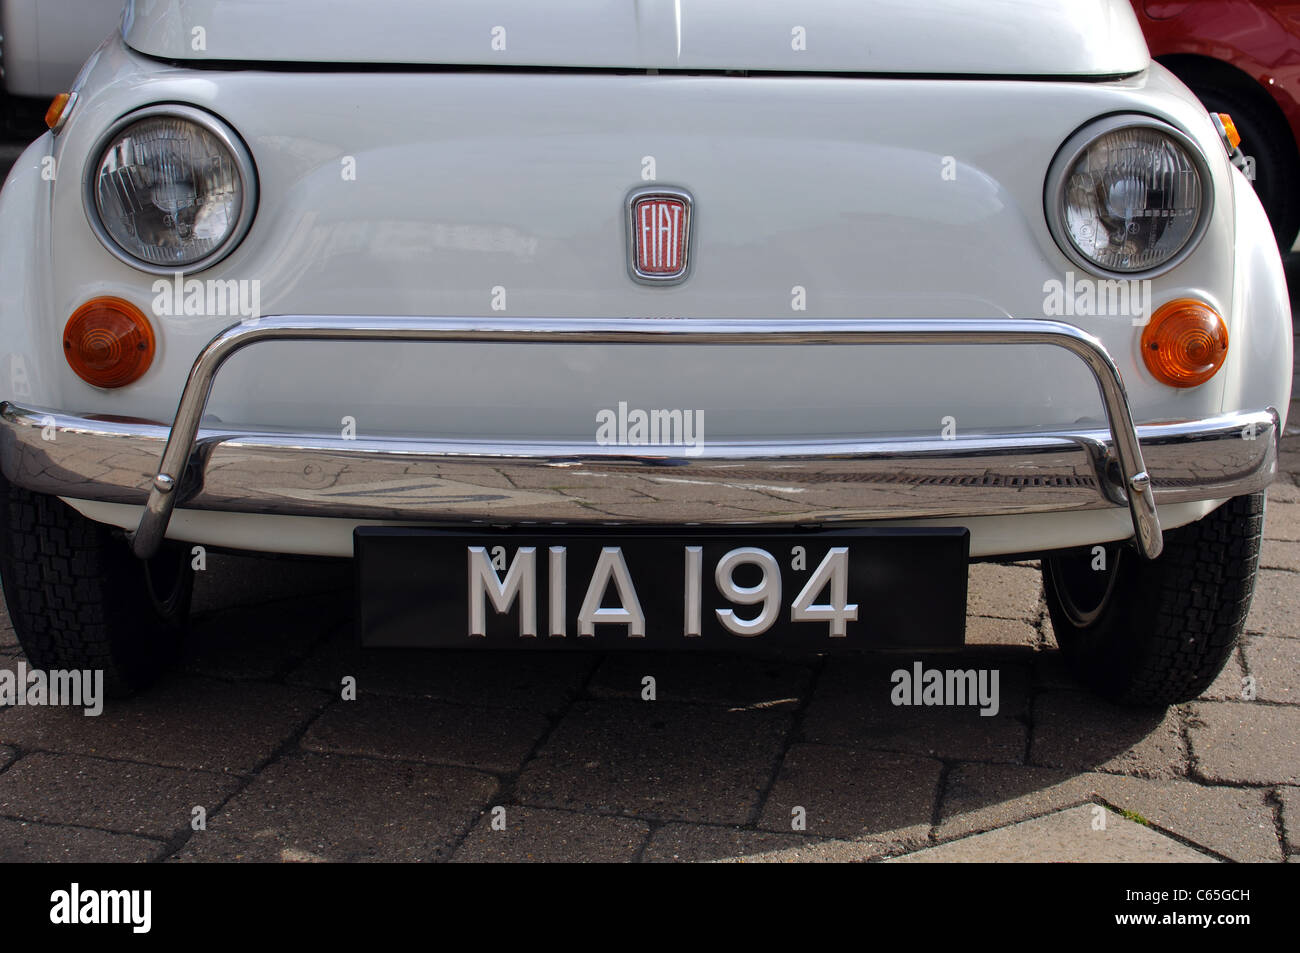 White Fiat 500 car Stock Photo